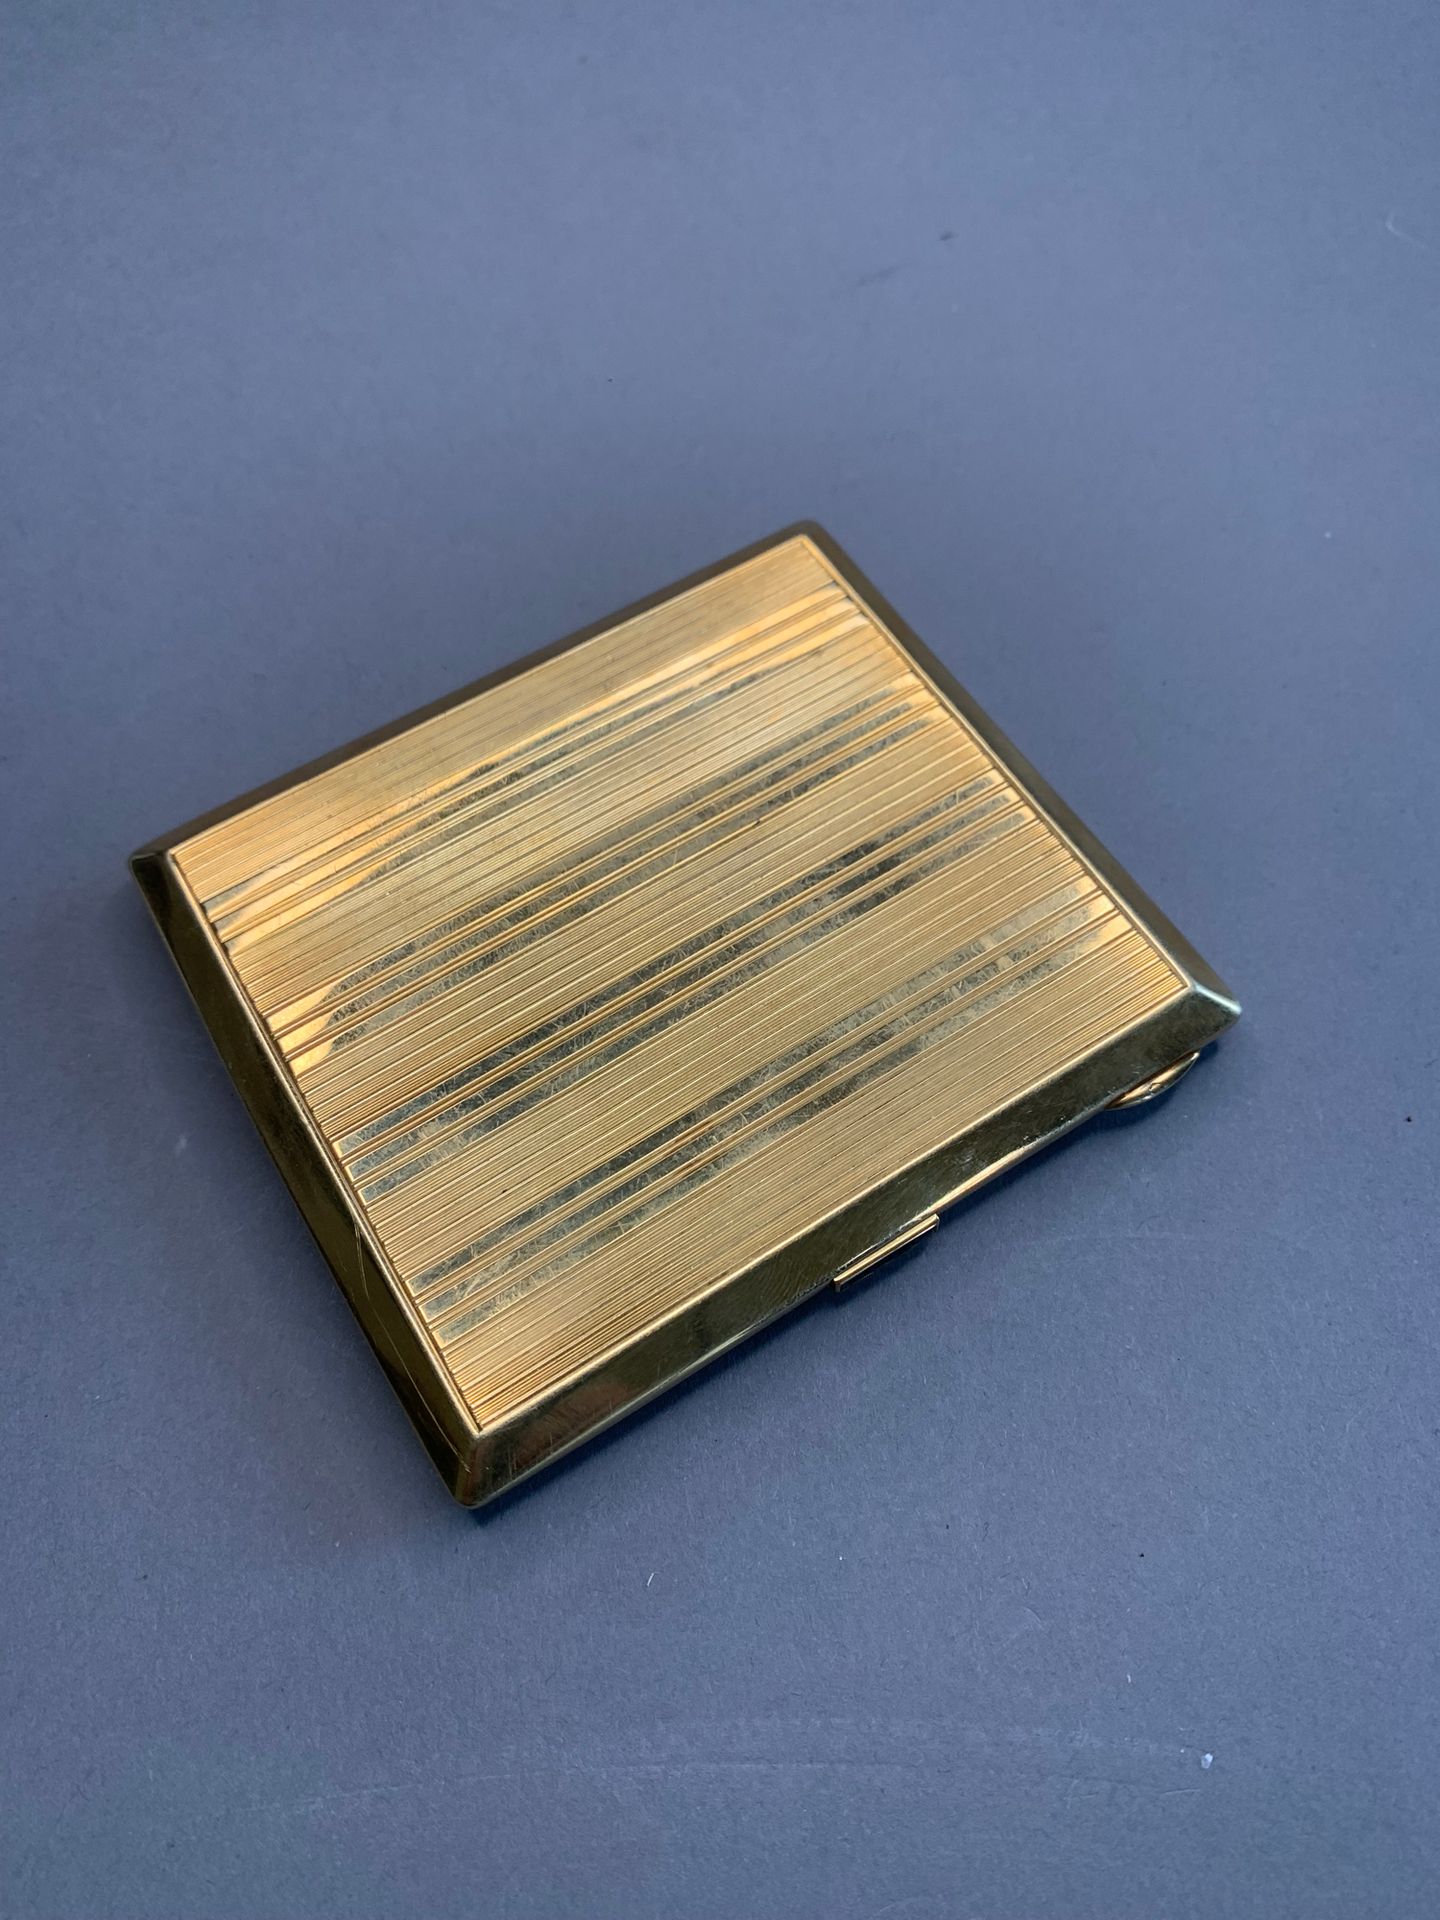 Null 18K黄金烟盒，带条纹的烟盒。
推杆上镶有4颗校准蓝宝石。
重量：142.9克